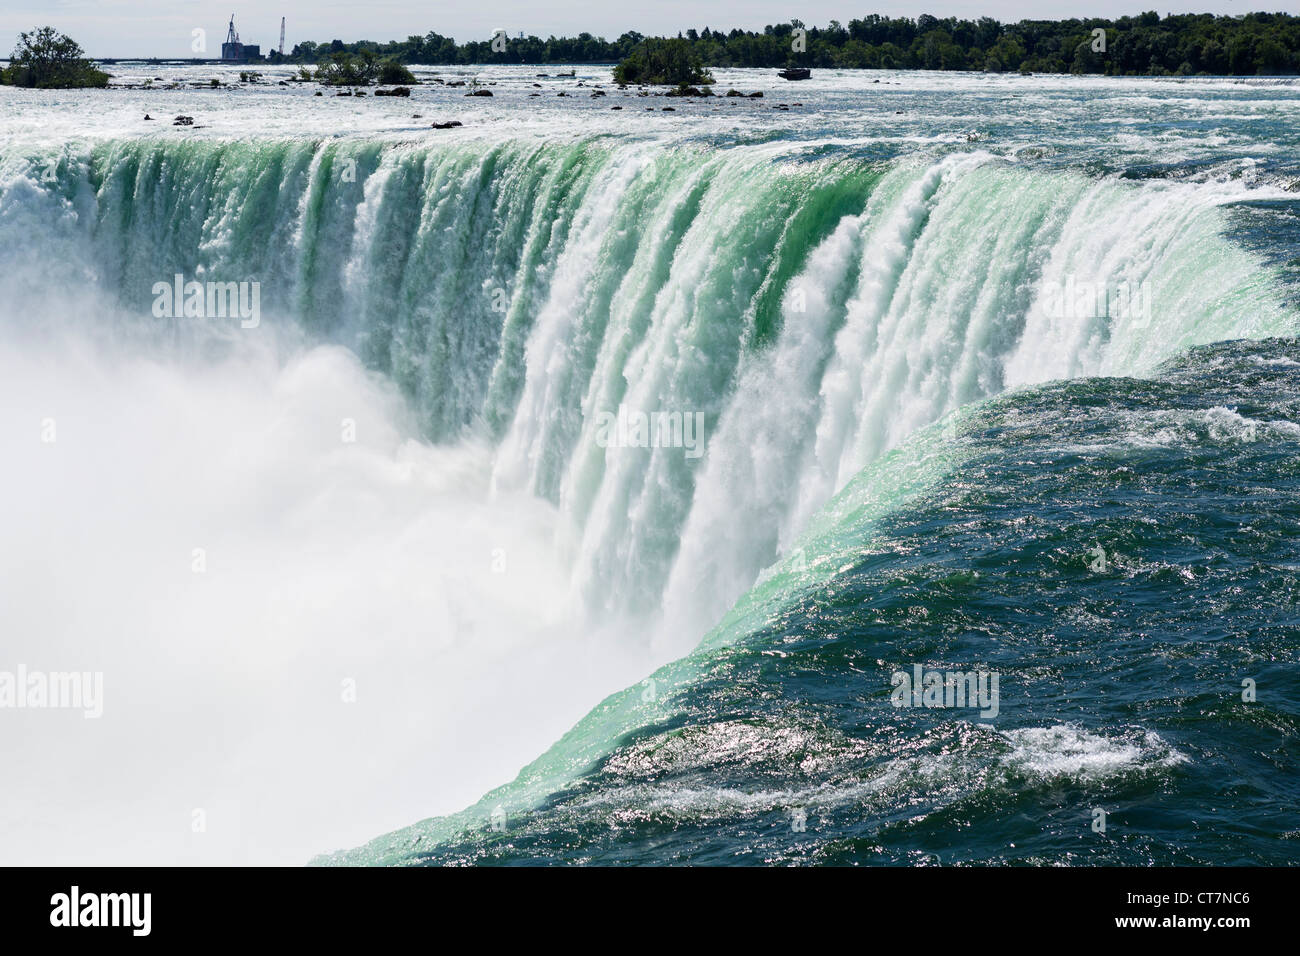 Cerca de las cataratas de La Herradura desde el lado Canadiense, Niagara Falls, Ontario, Canadá Foto de stock